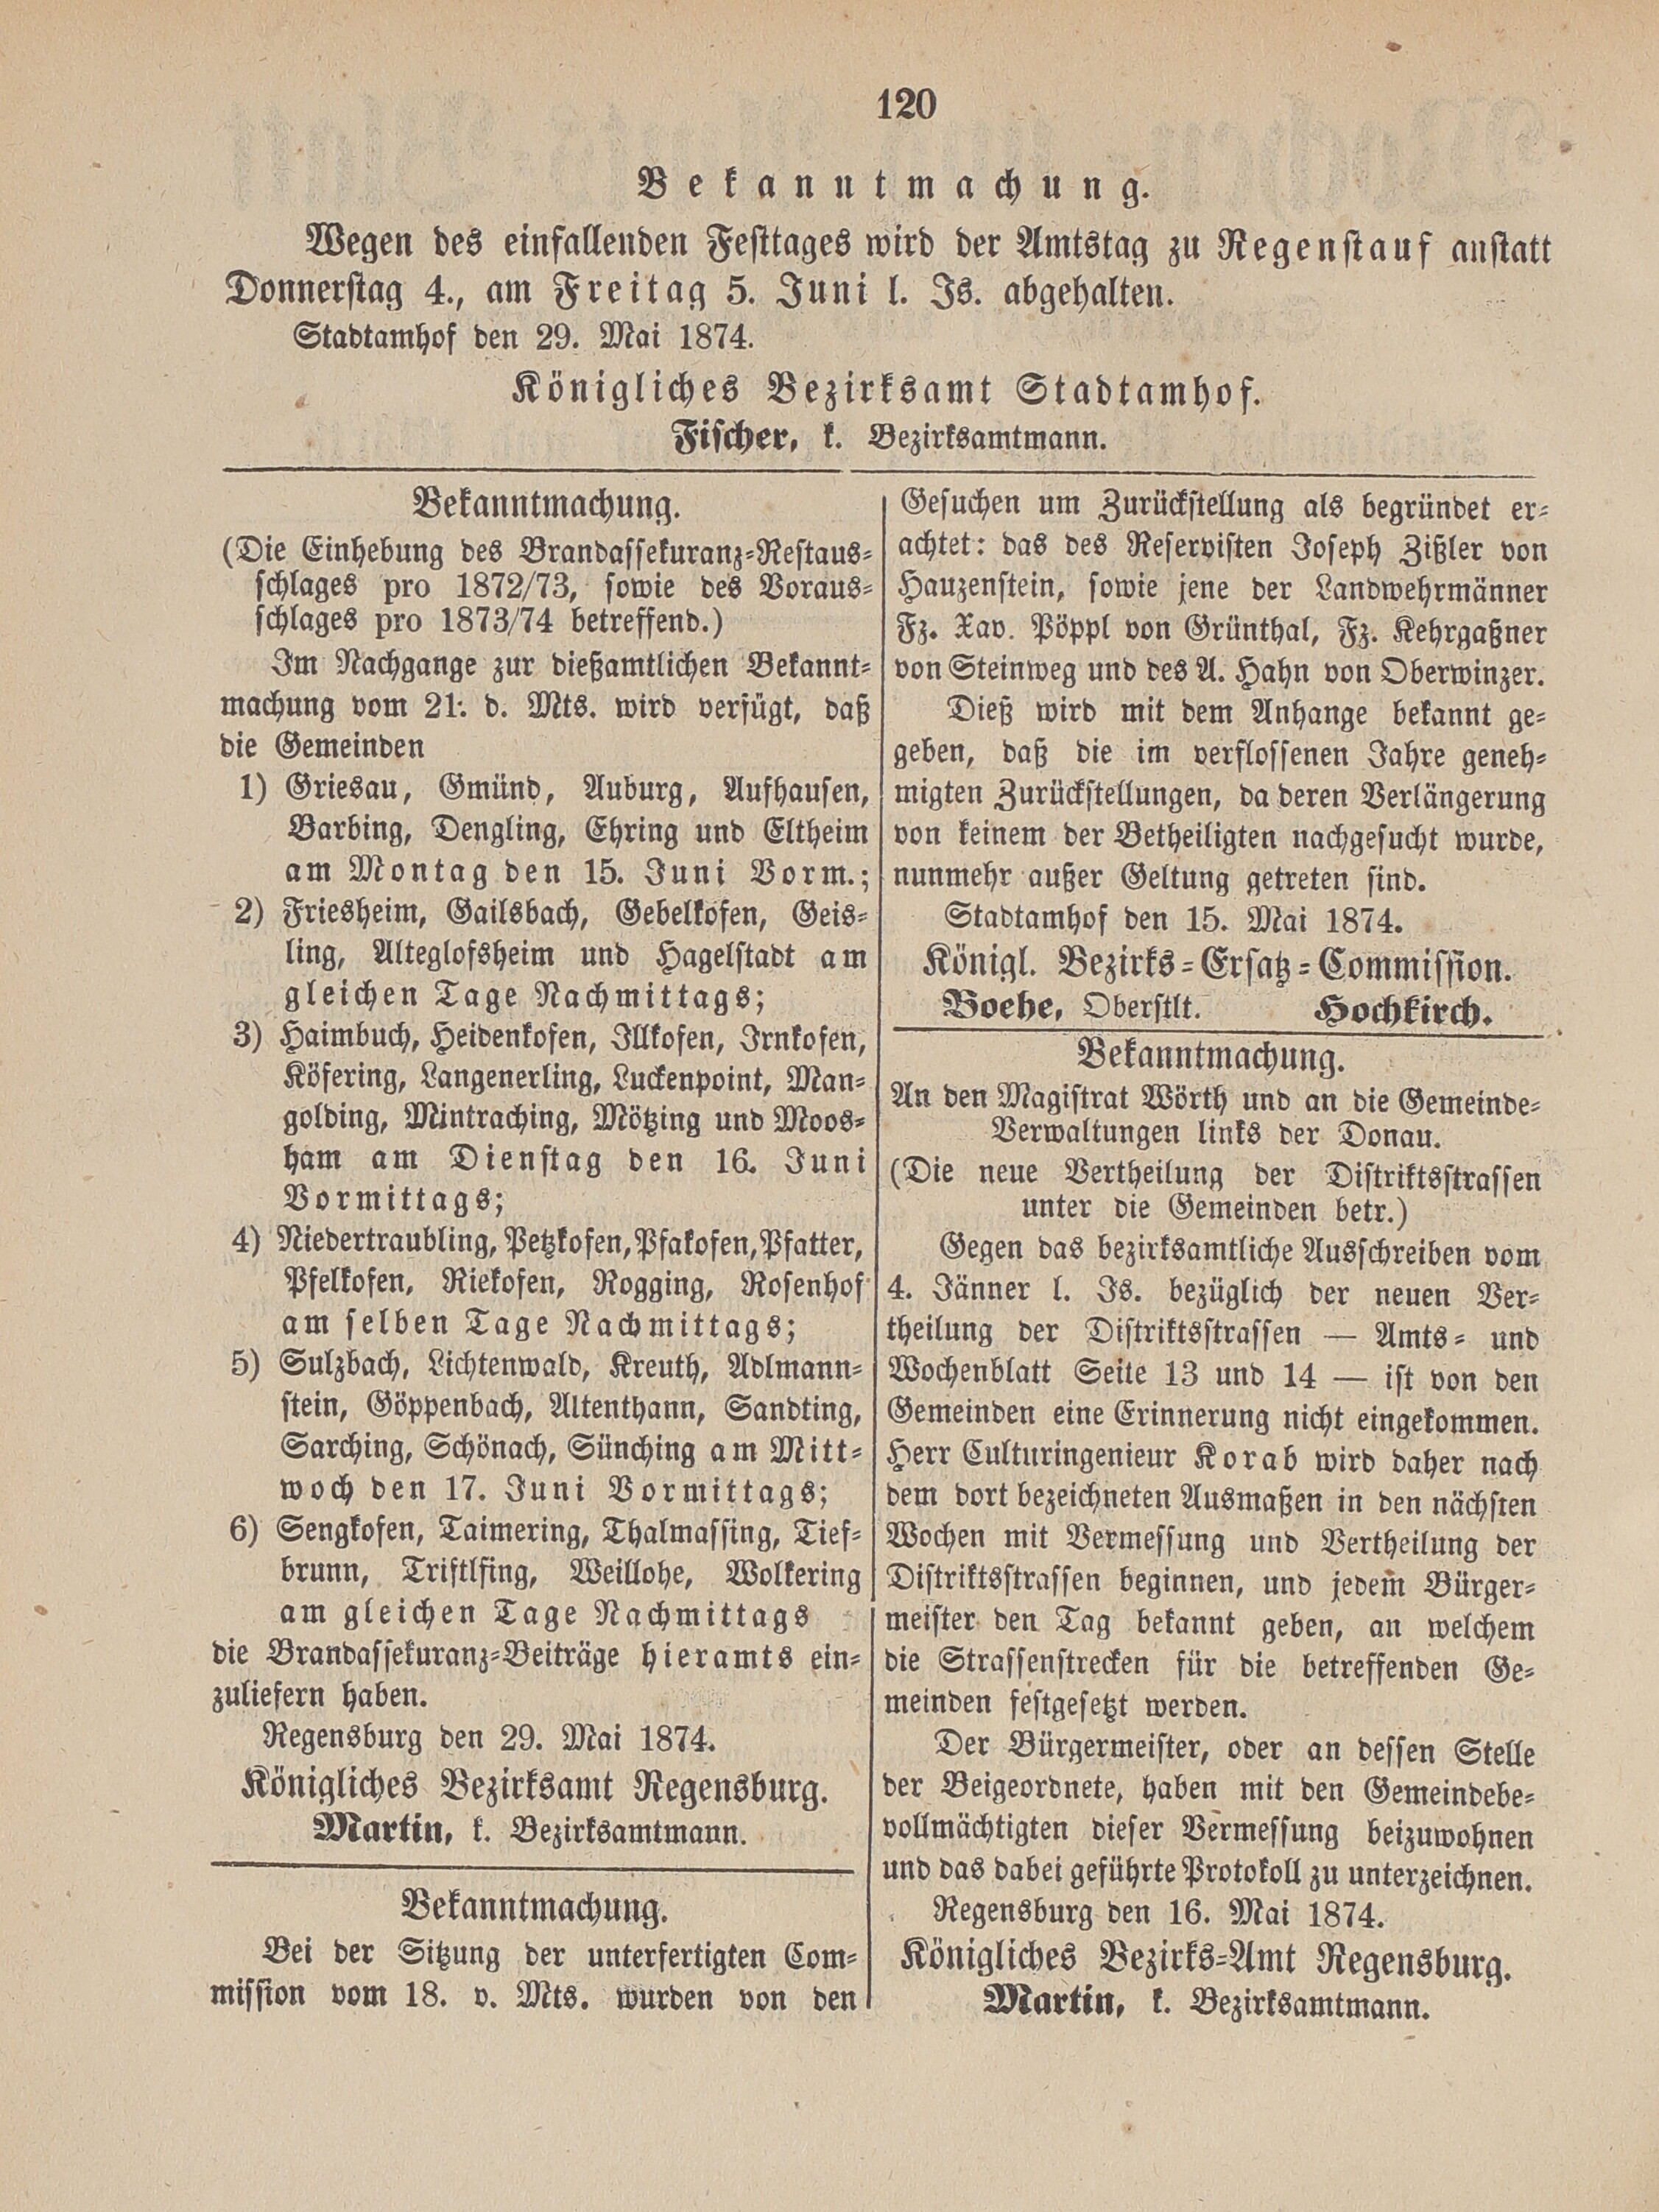 2. amtsblatt-stadtamhof-regensburg-1874-05-31-n22_1250